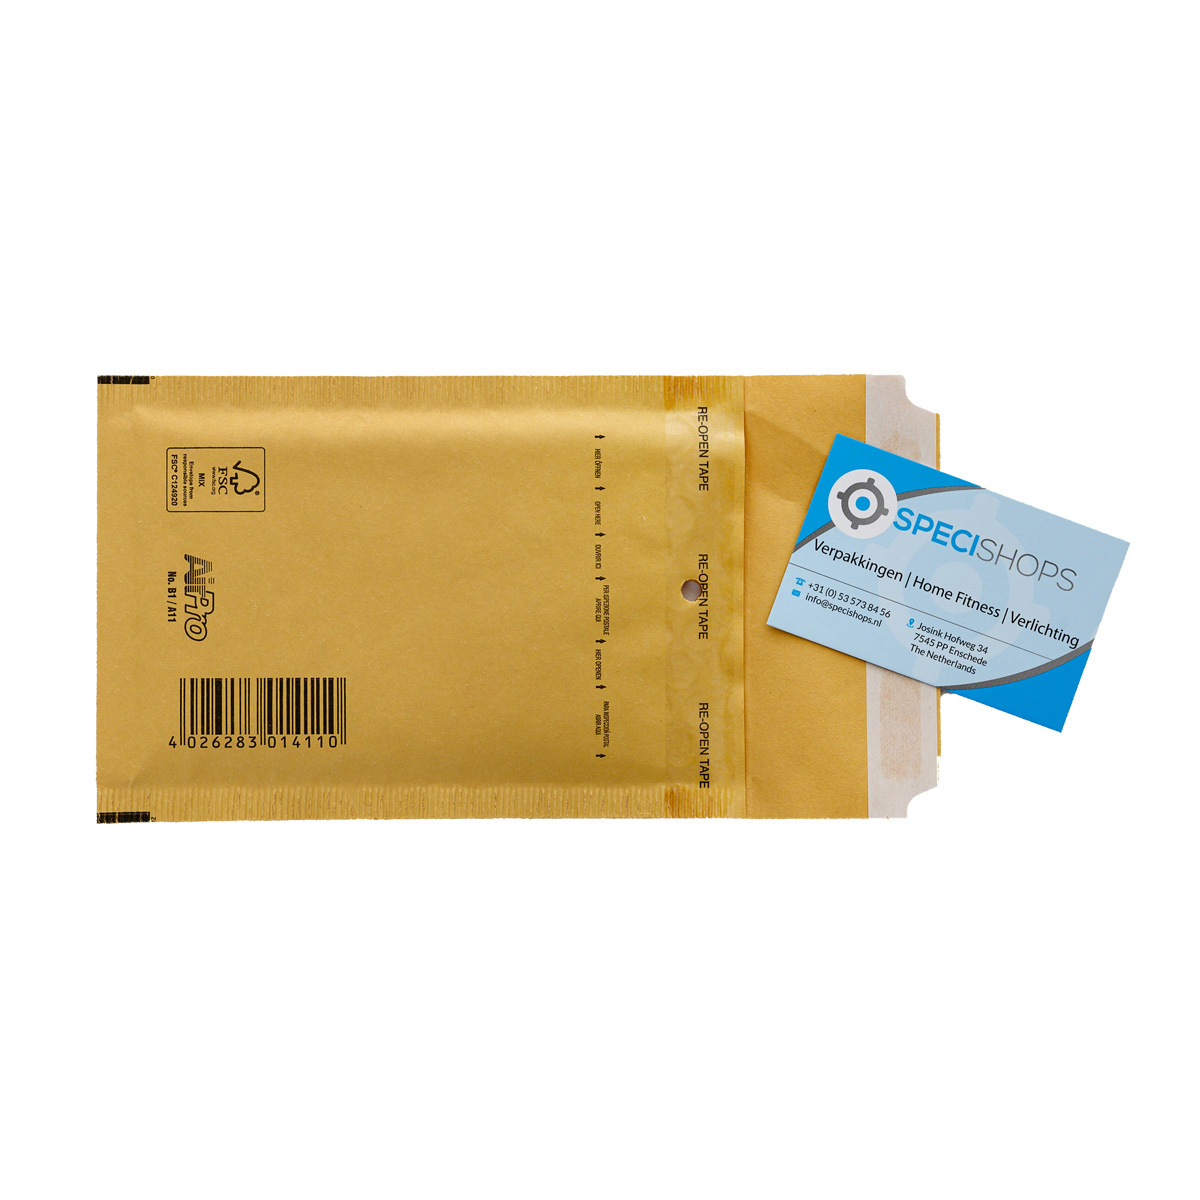 324x229 mm (C4) Enveloppe Post Marque blanche avec fenêtre, PLP324229W-W